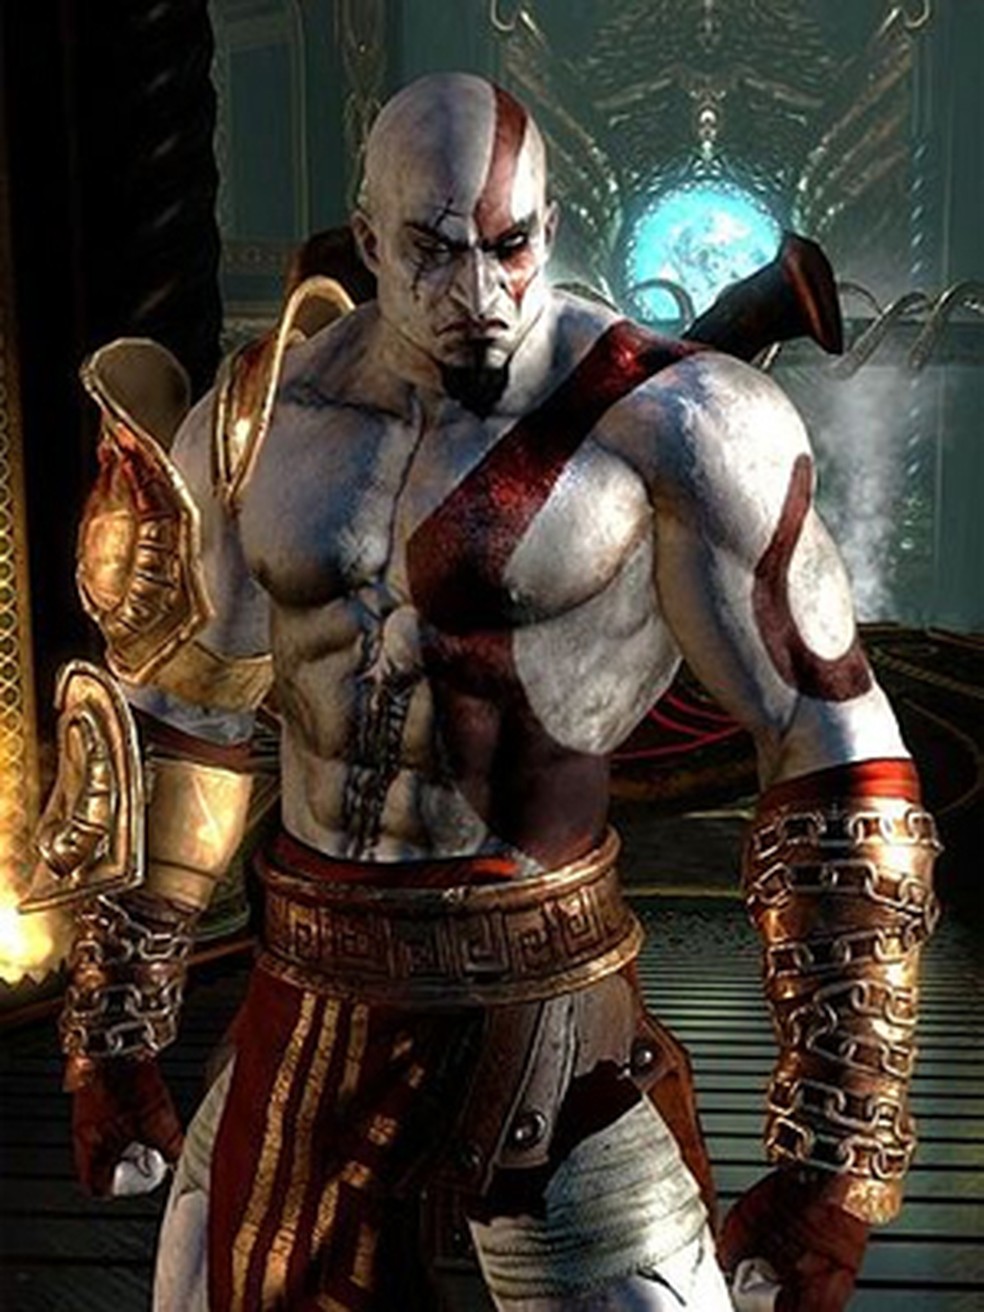 Kratos: uma história de vingança e redenção em God of War